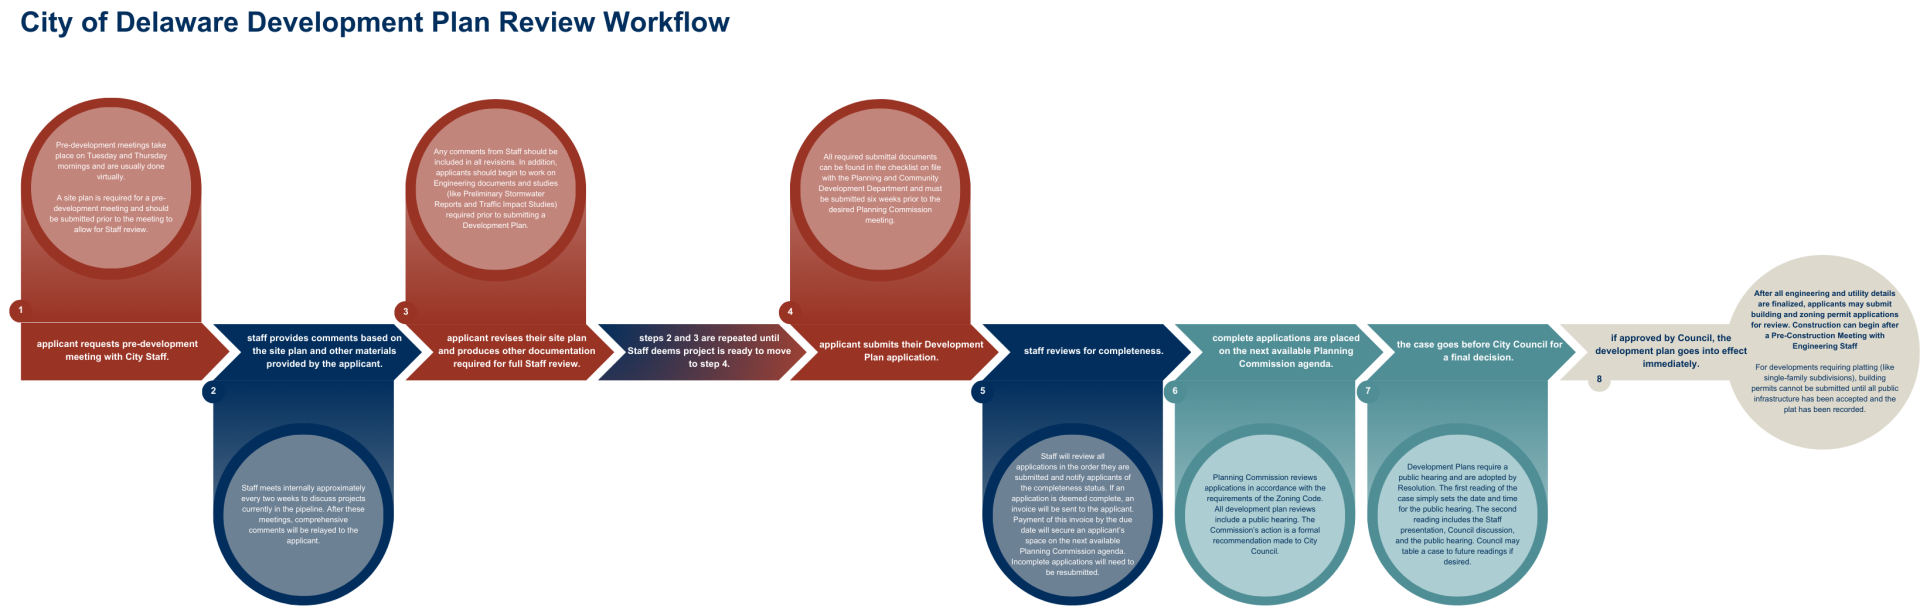 Development Plan Review Workflow